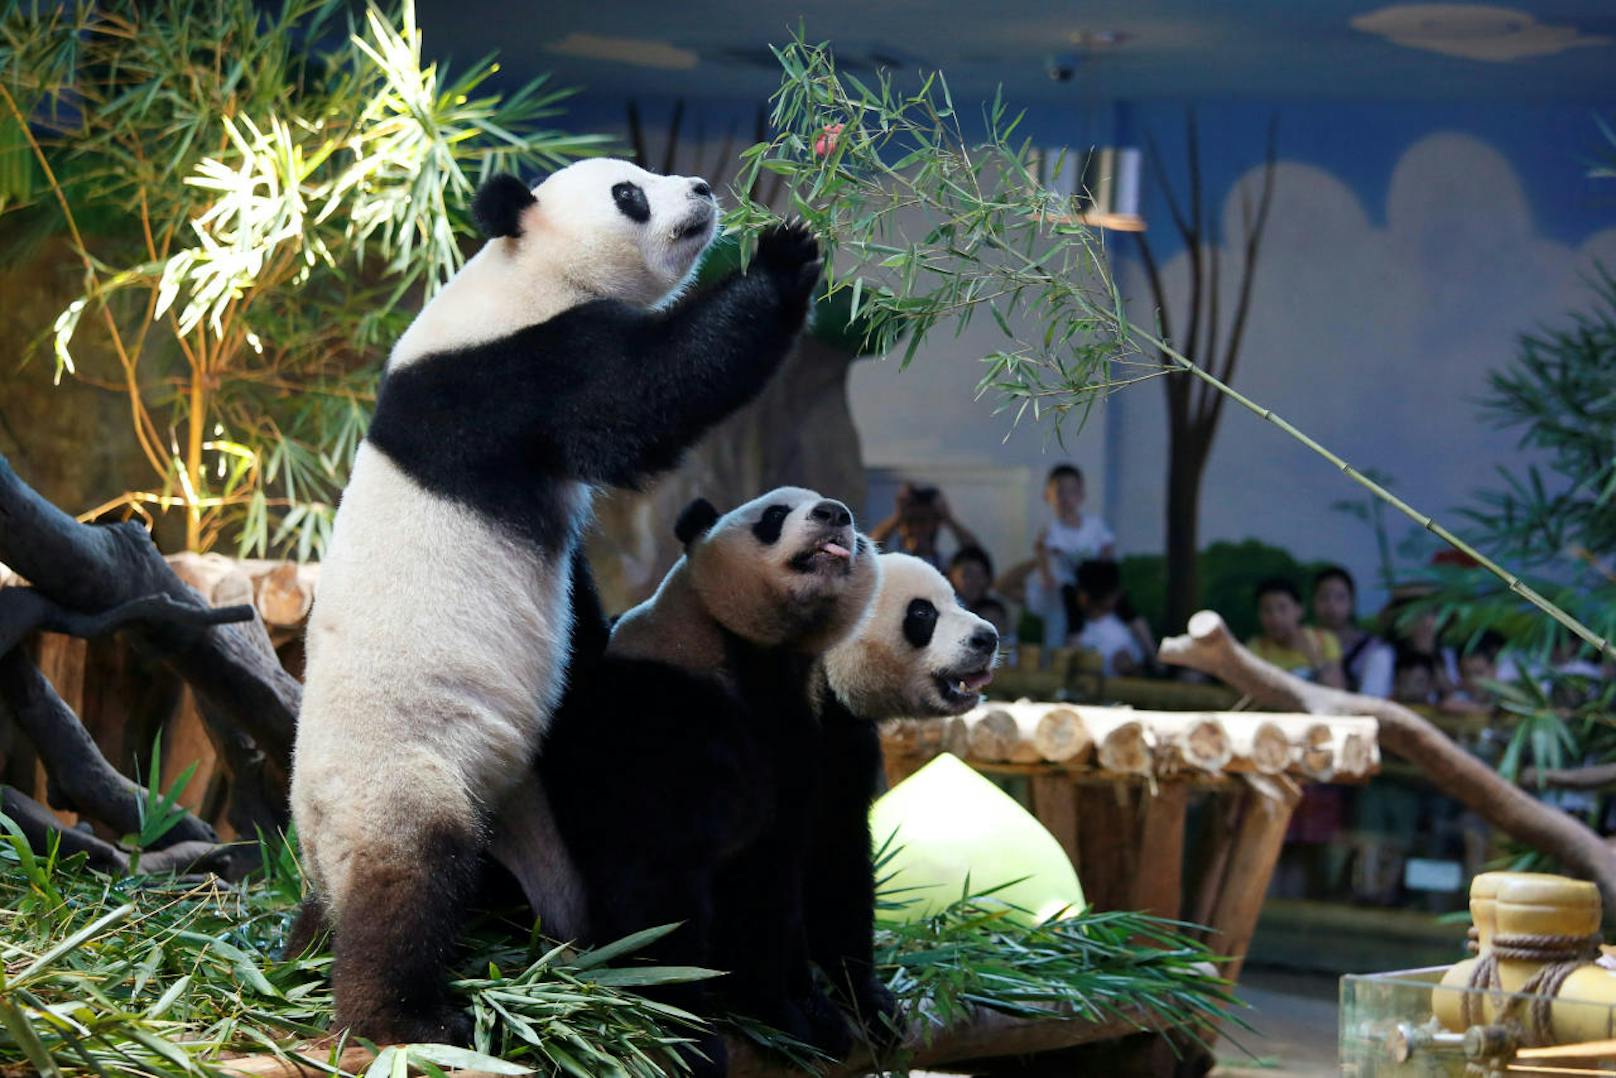 Wer Weiß, vielleicht gibt es dann schon bald wieder neuen Panda-Nachwuchs im Tiergarten Schönbrunn zu bestaunen.